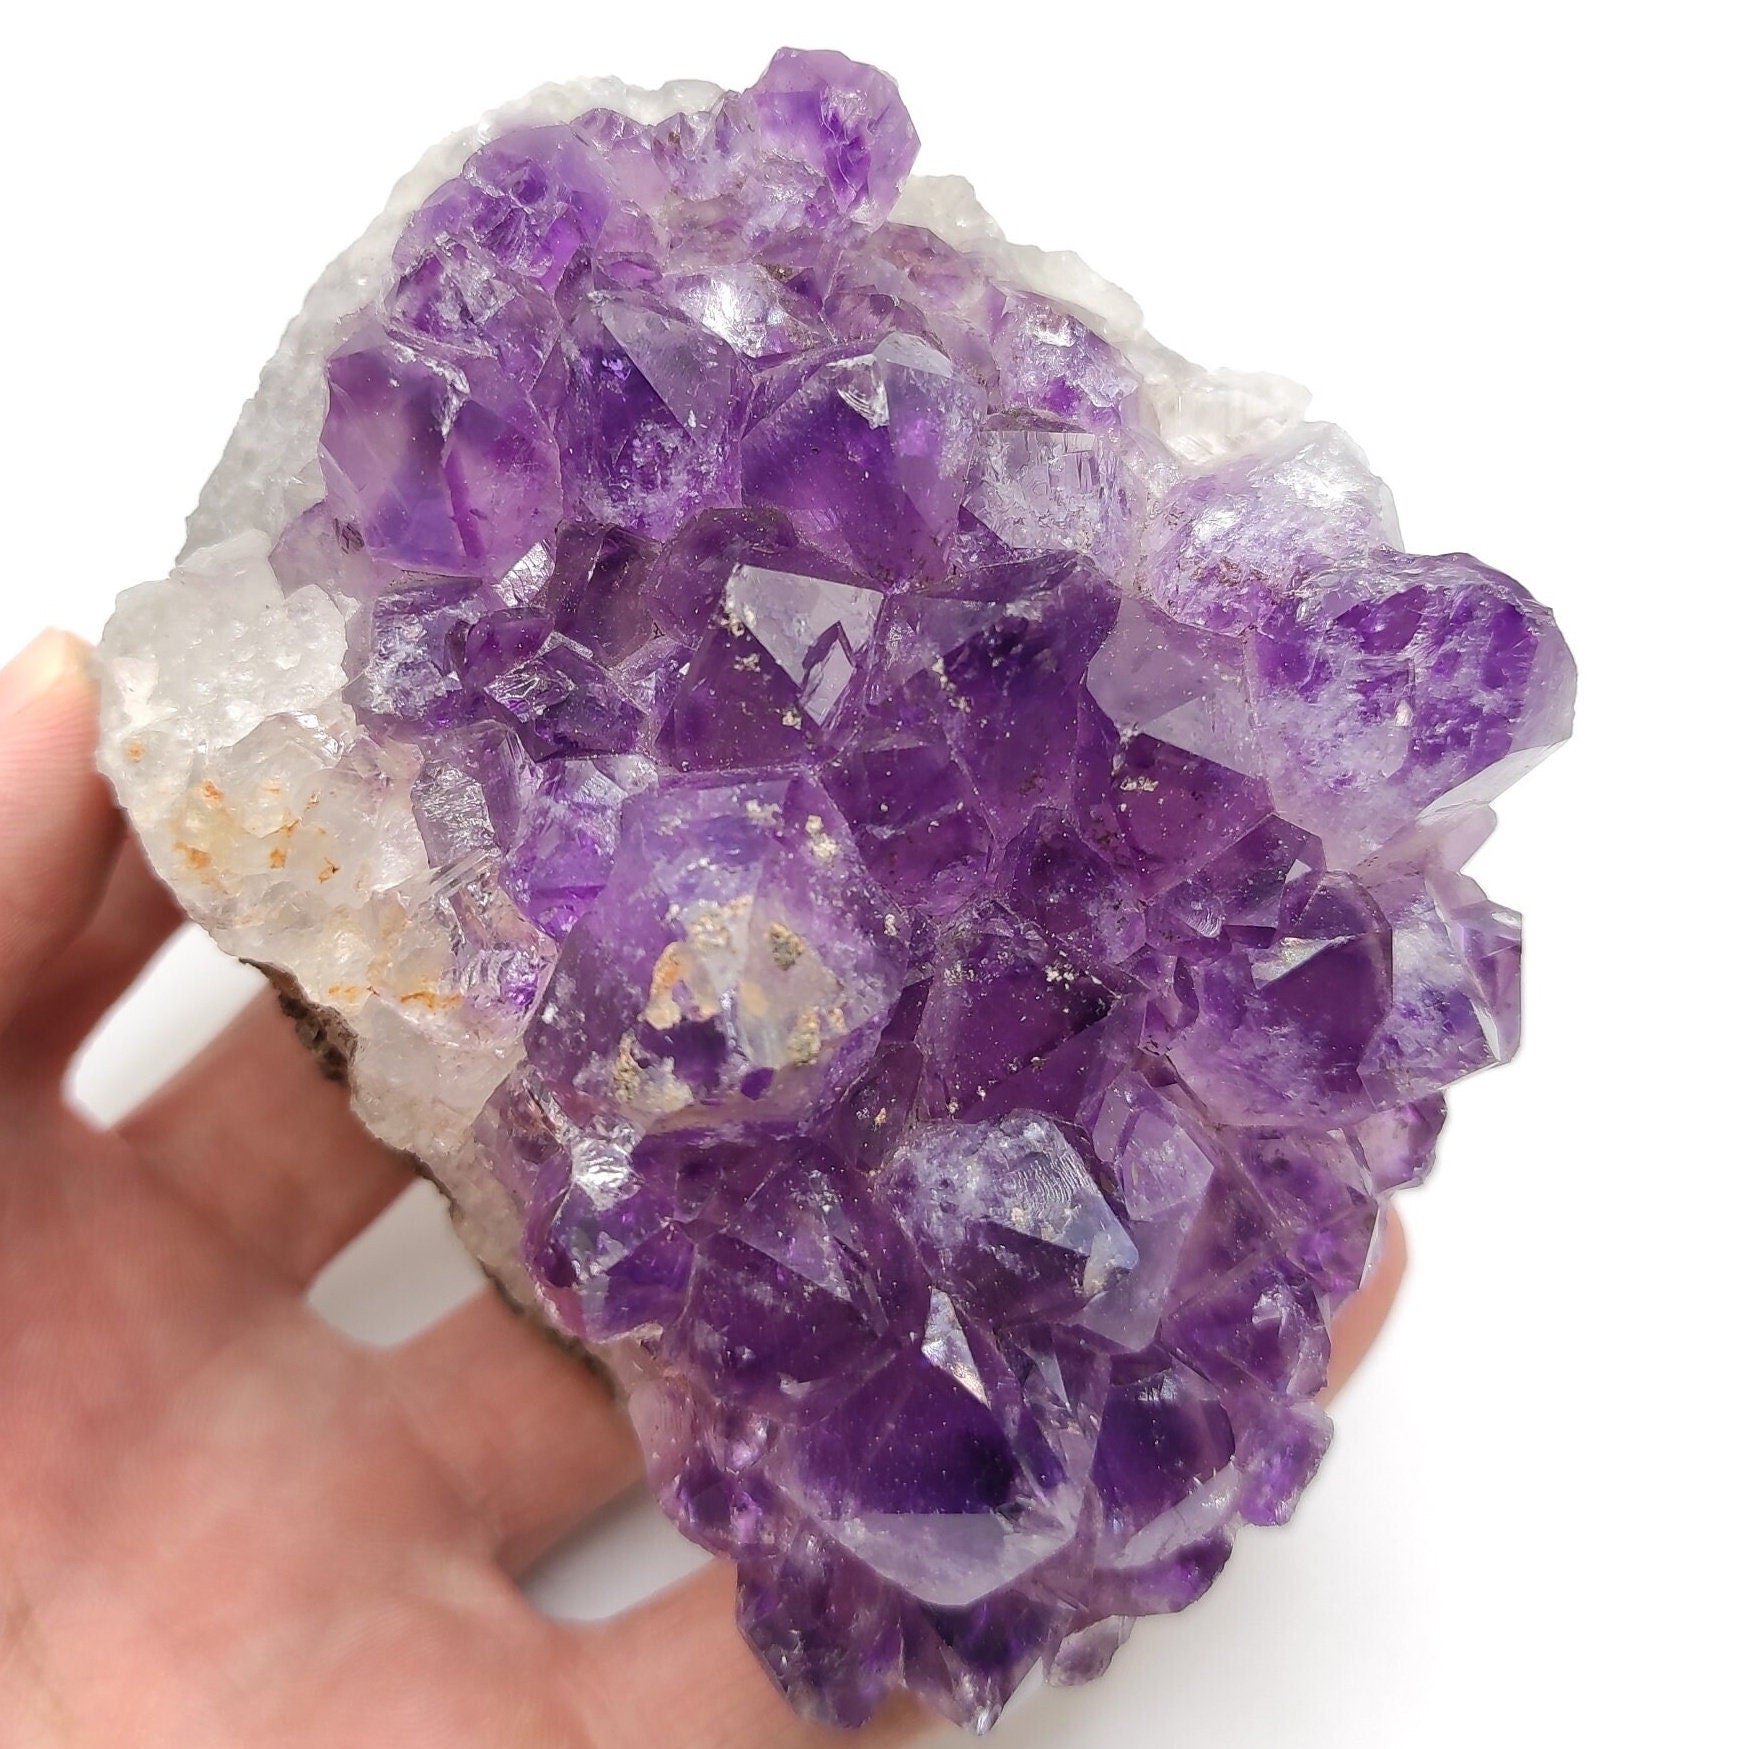 561g Amethyst Crystal Cluster Purple Amethyst from South Brazil Amethyst Gemstone Raw Amethyst Rough Amethyst Desk Crystal Natural Crystals